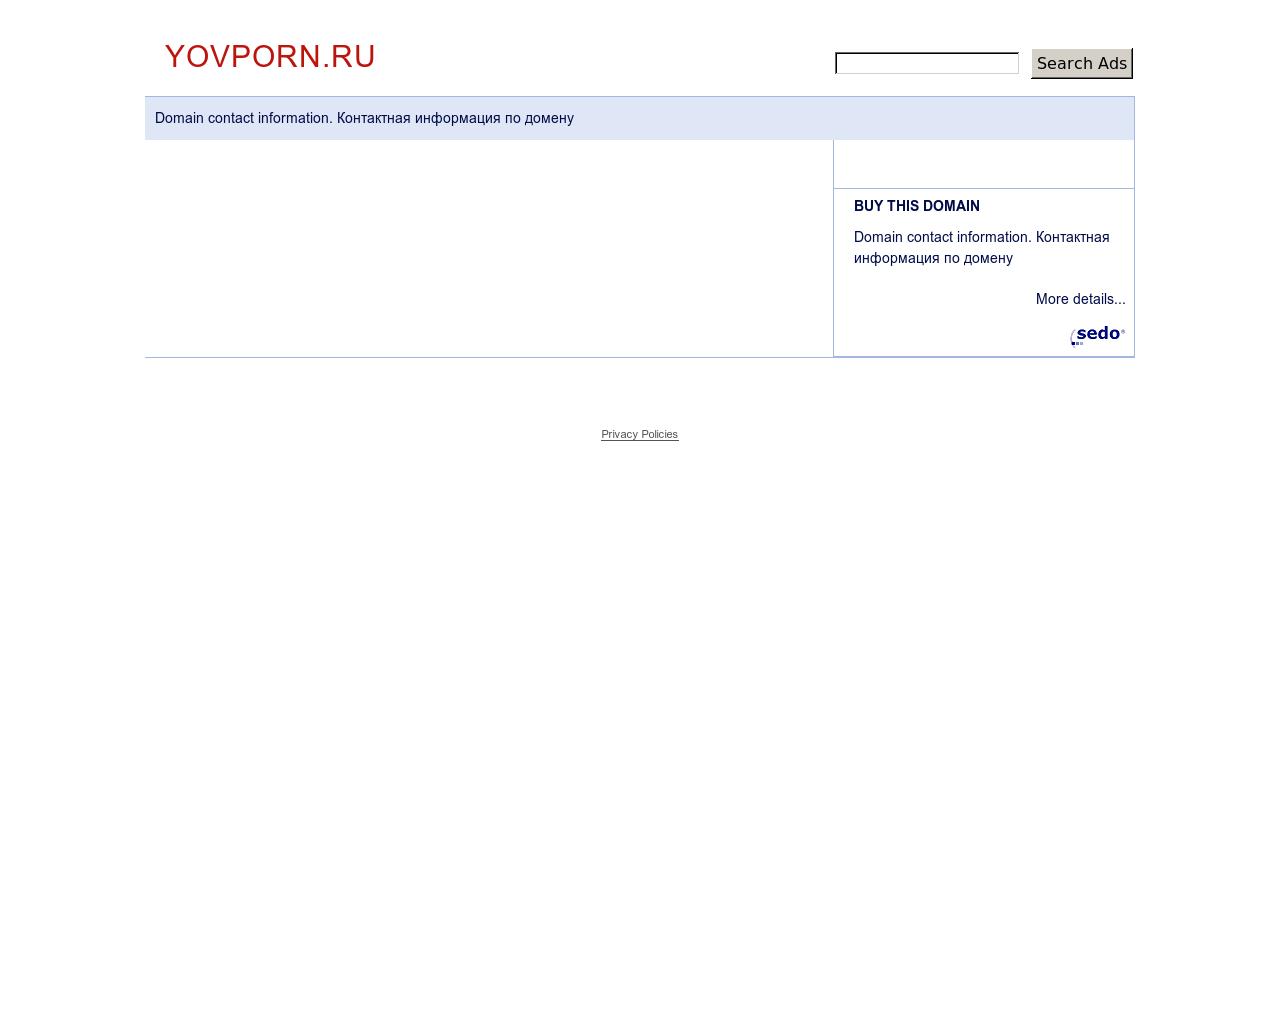 Изображение сайта yovporn.ru в разрешении 1280x1024